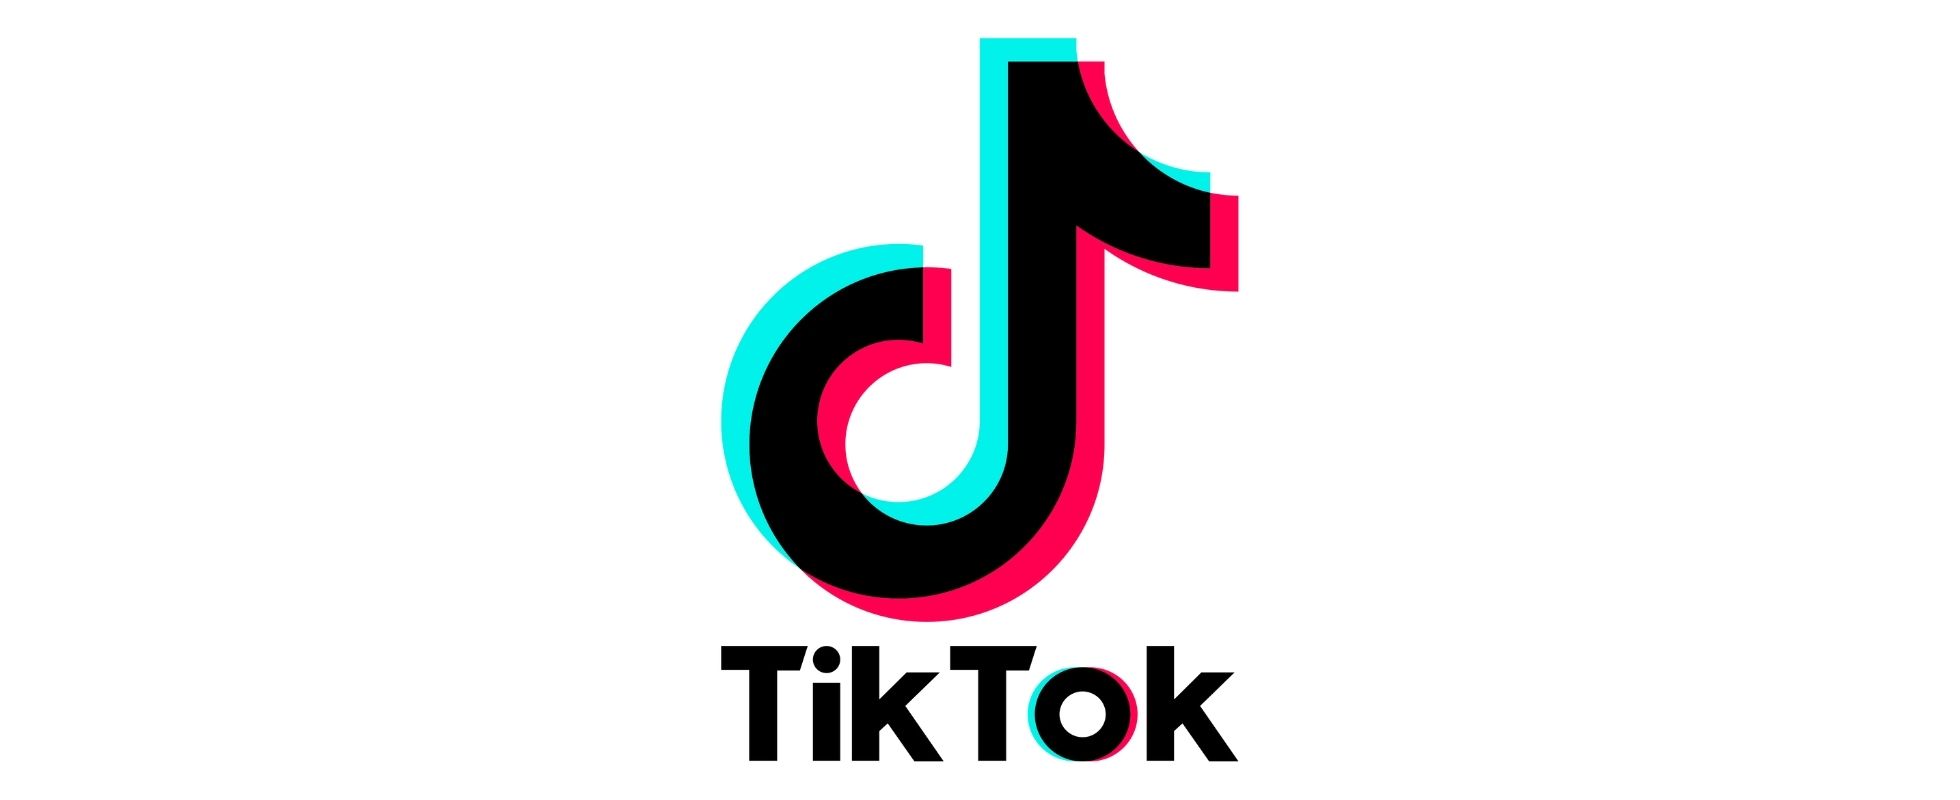 TikTok möchte Spiele zur App hinzufügen Titel